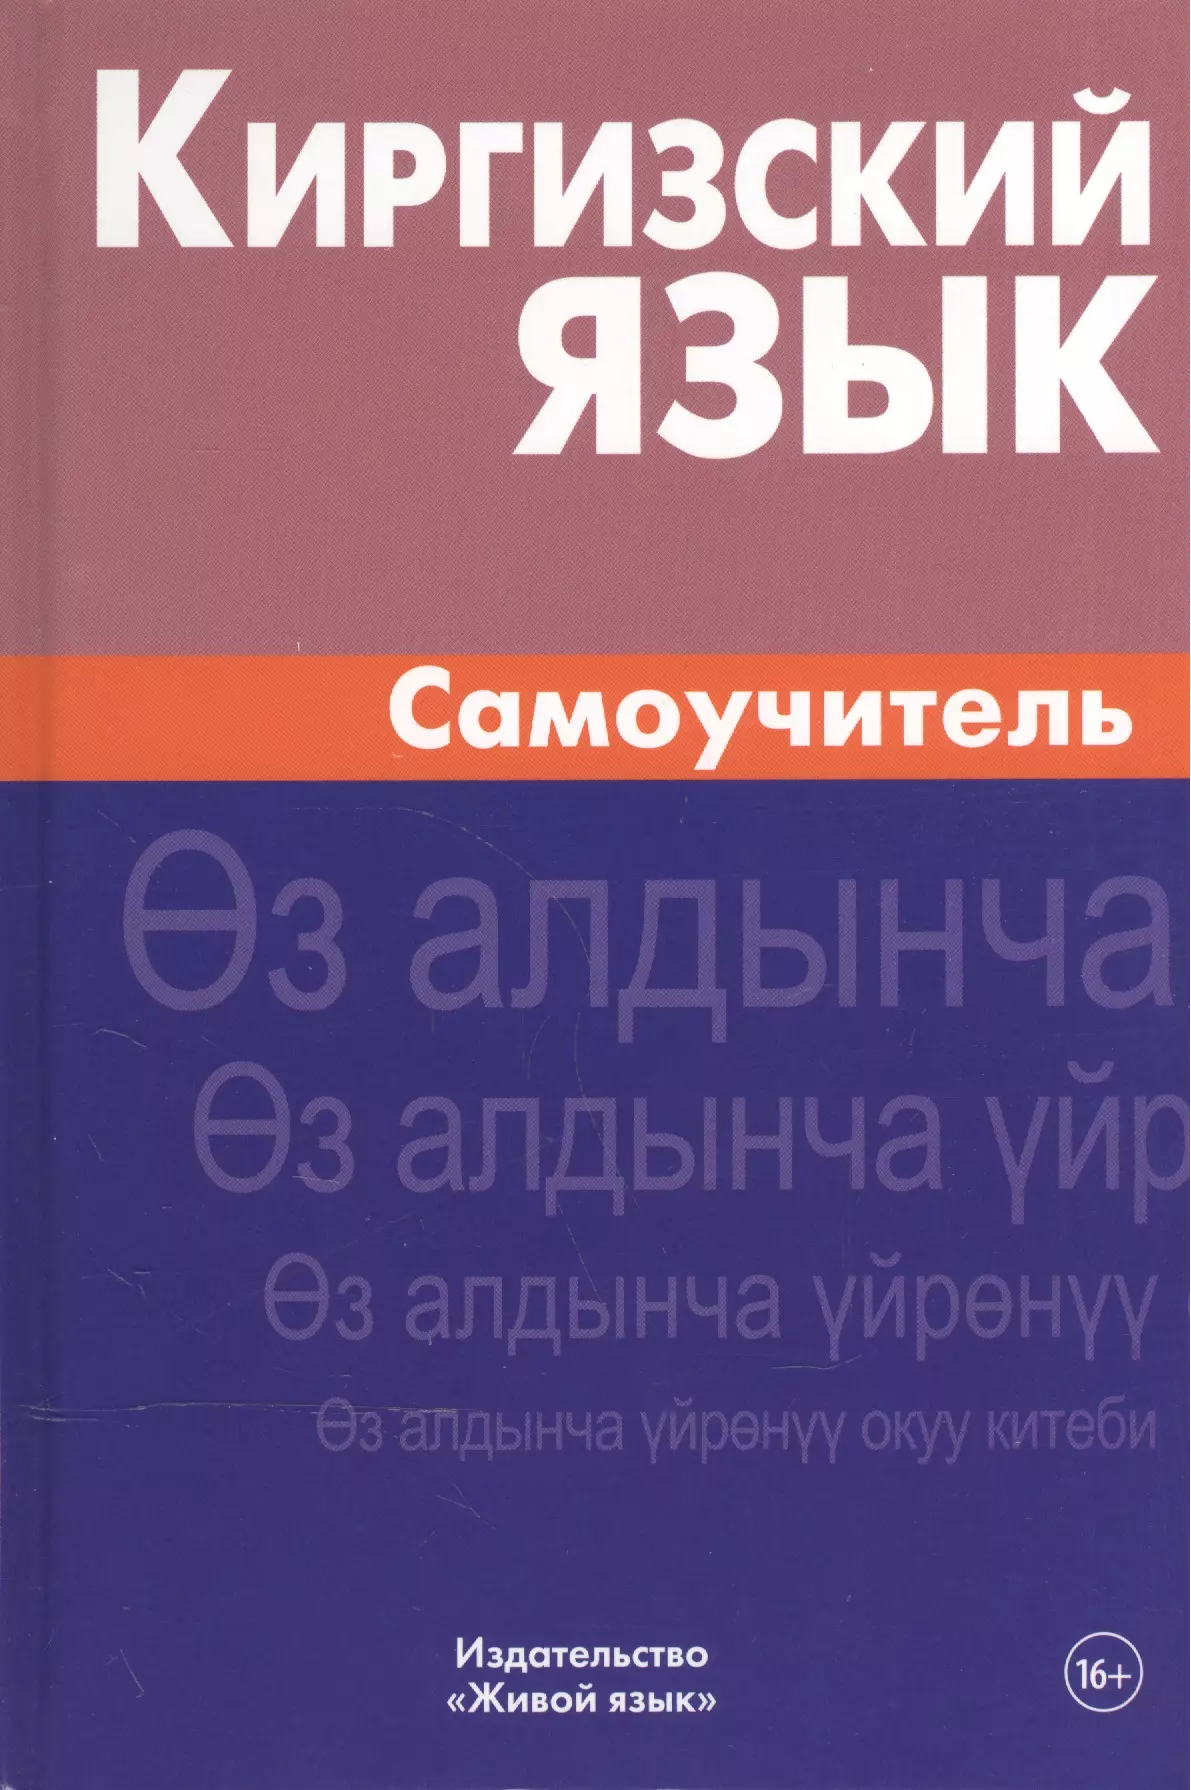 Язык киргизов. Учебник киргизского языка. Кыргызский язык. Самоучитель киргизского. Самоучитель киргизского языка.